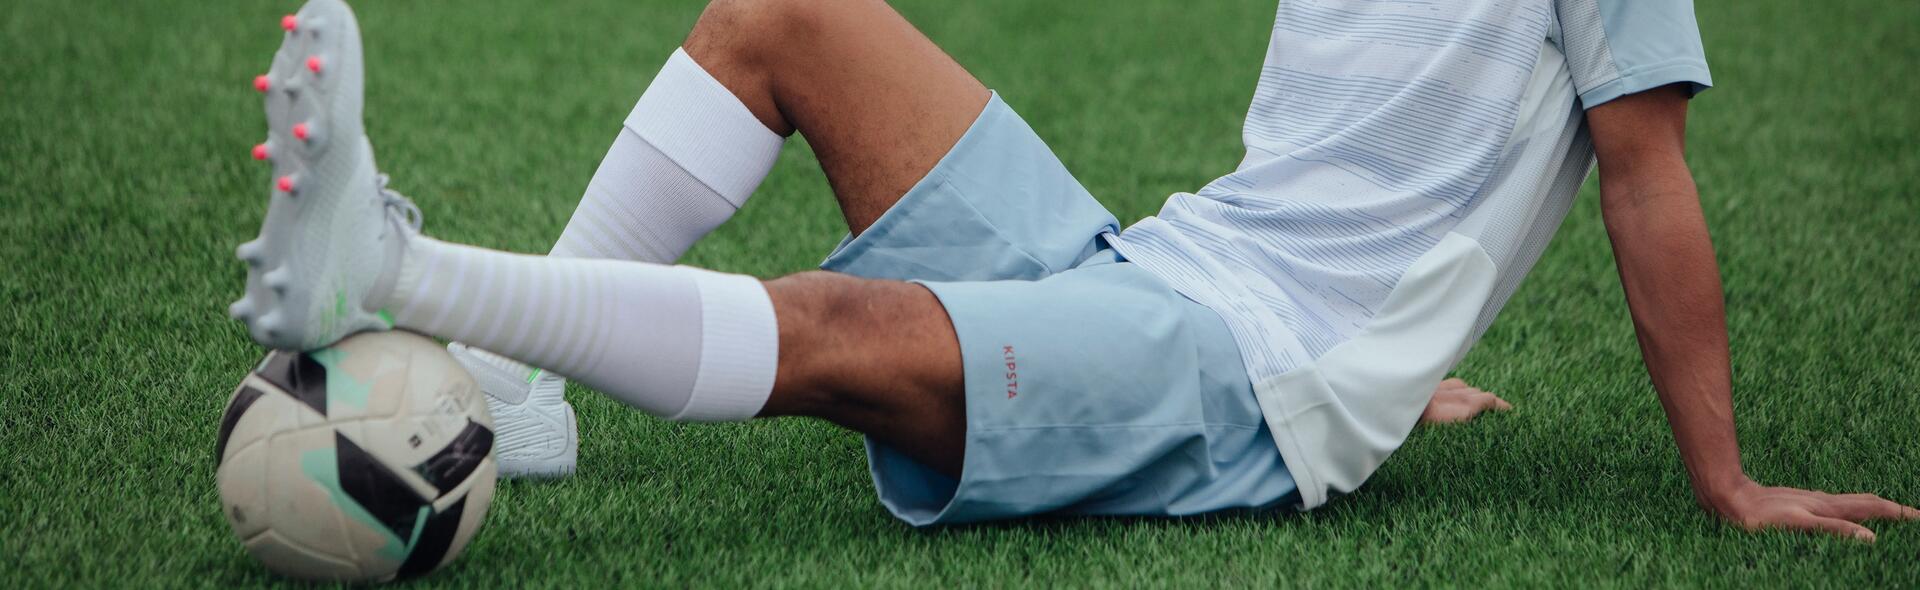 piłkarz siedzący na murawie w odzieży i butach piłkarskich